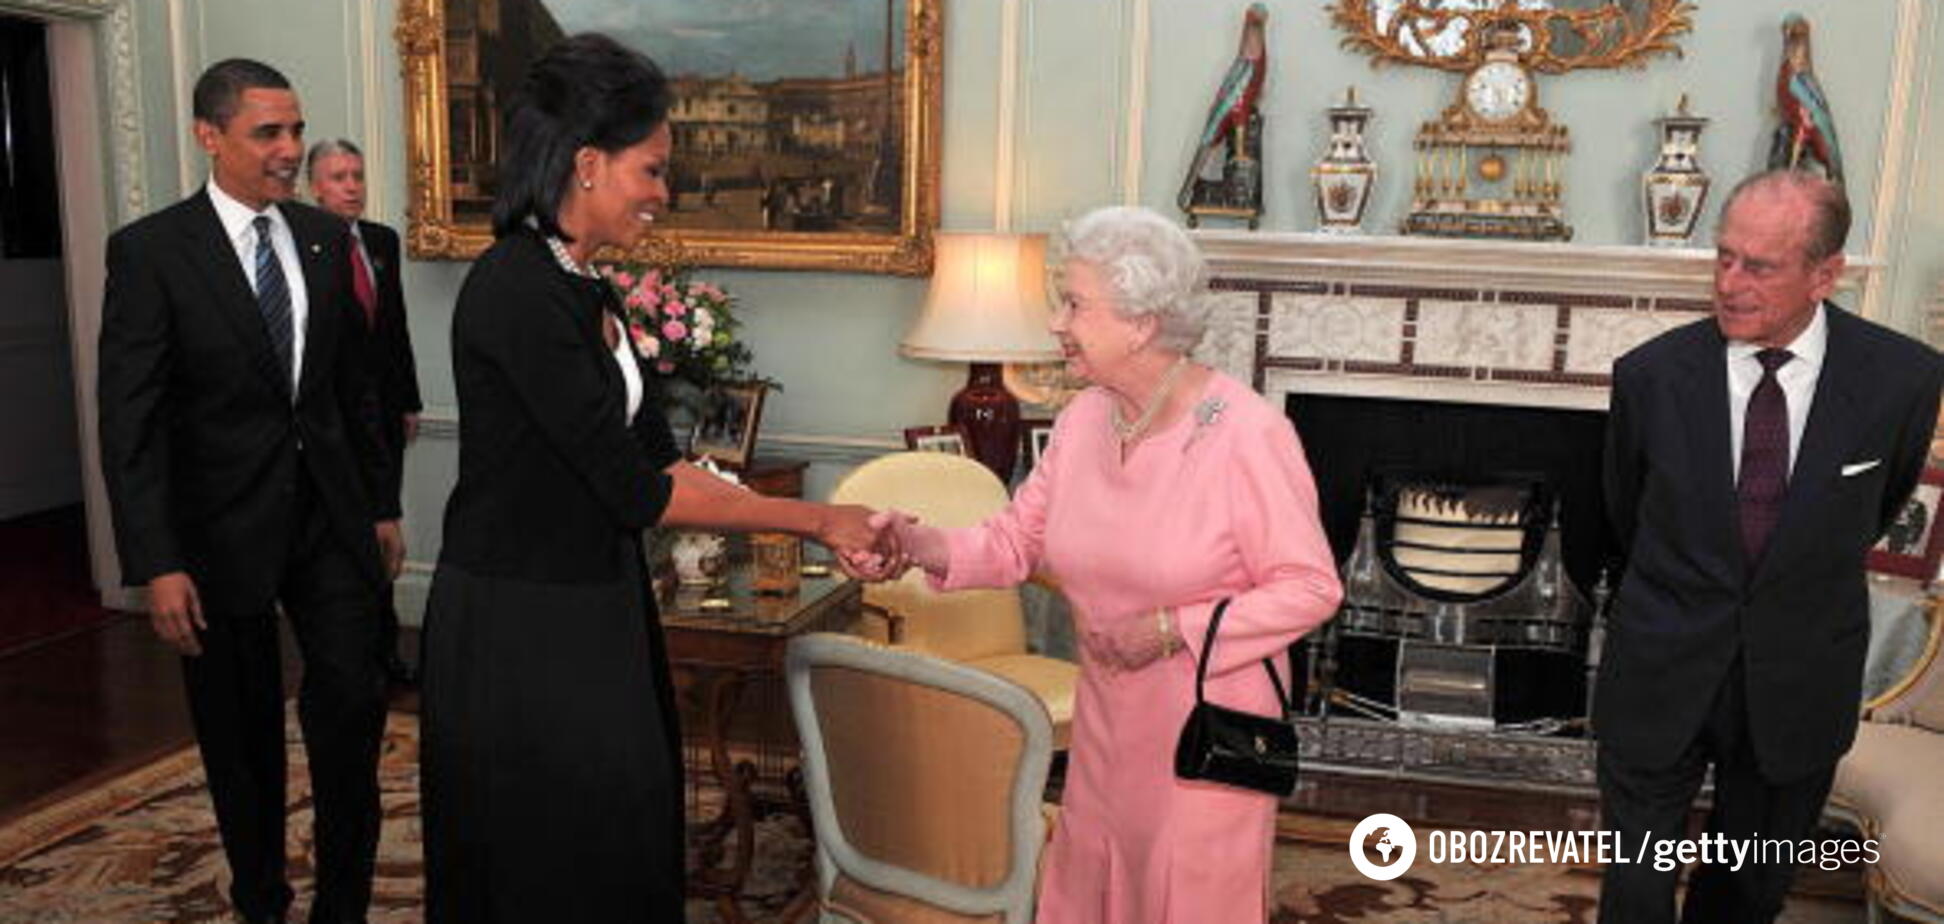 Єлизавета ІІ була в захваті: стало відомо, який 'некоролівський' подарунок від Барака Обами дуже вразив монархиню 